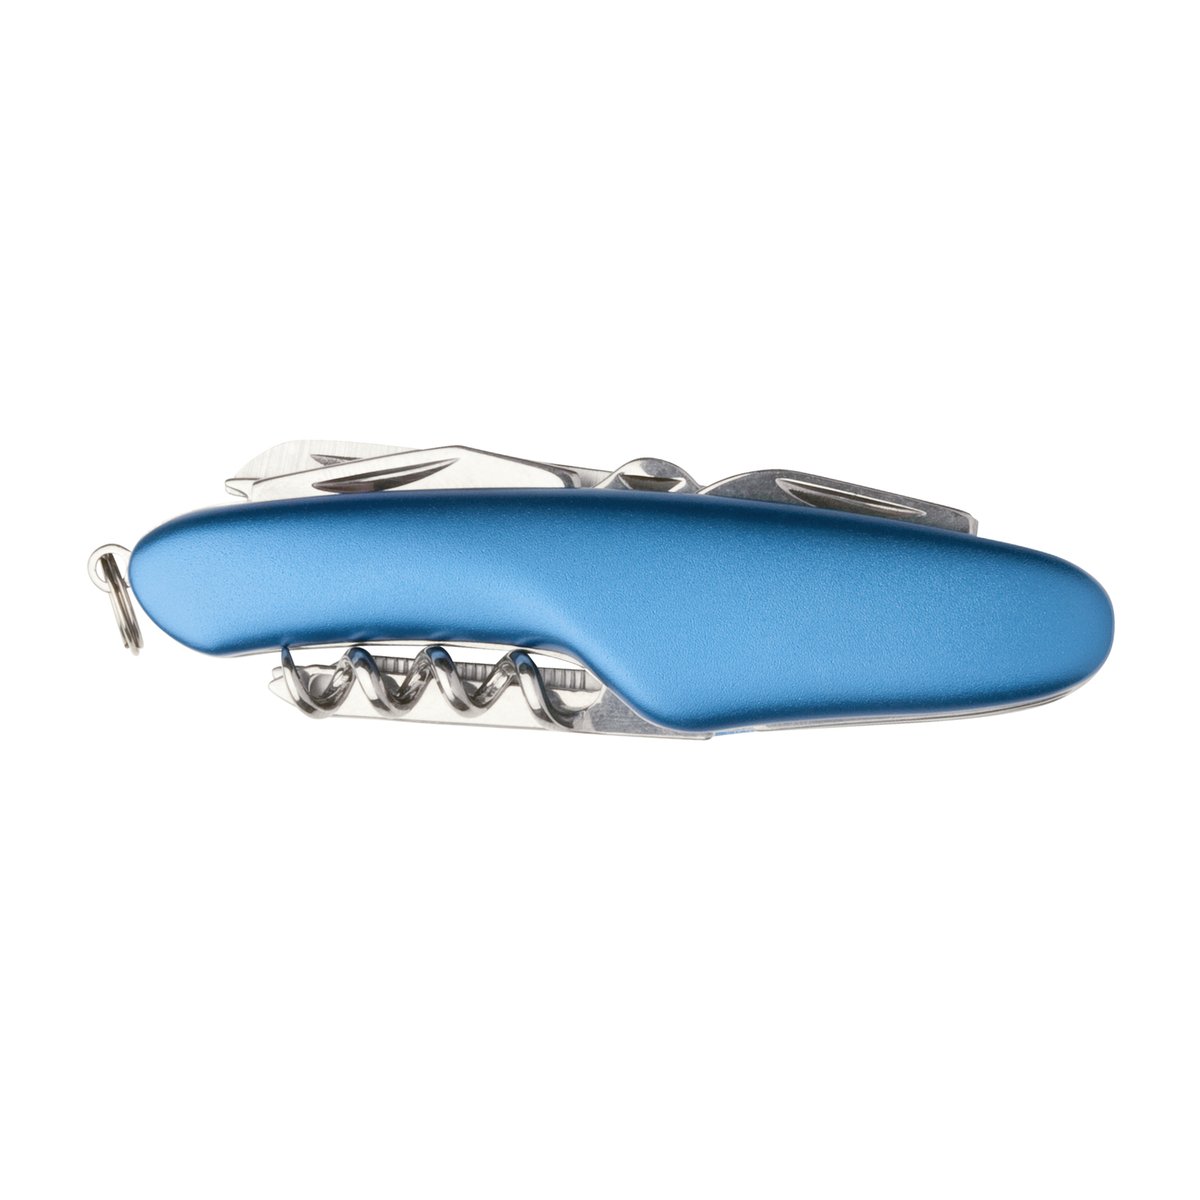 Taschenmesser REFLECTS-TRINIDAD blau